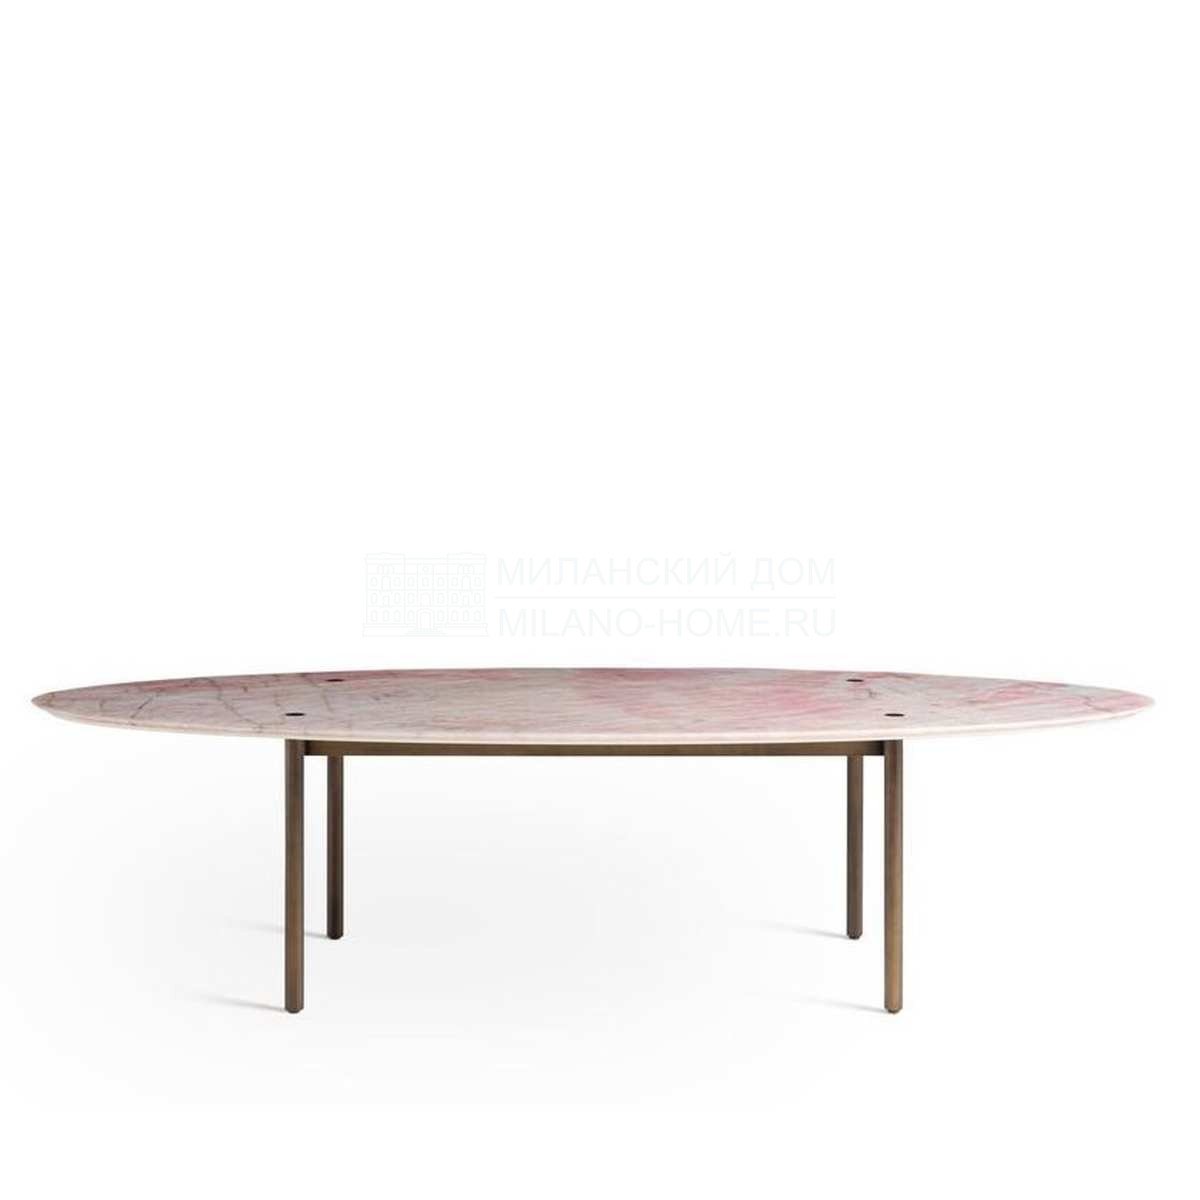 Обеденный стол Totu dining table из Италии фабрики FENDI Casa